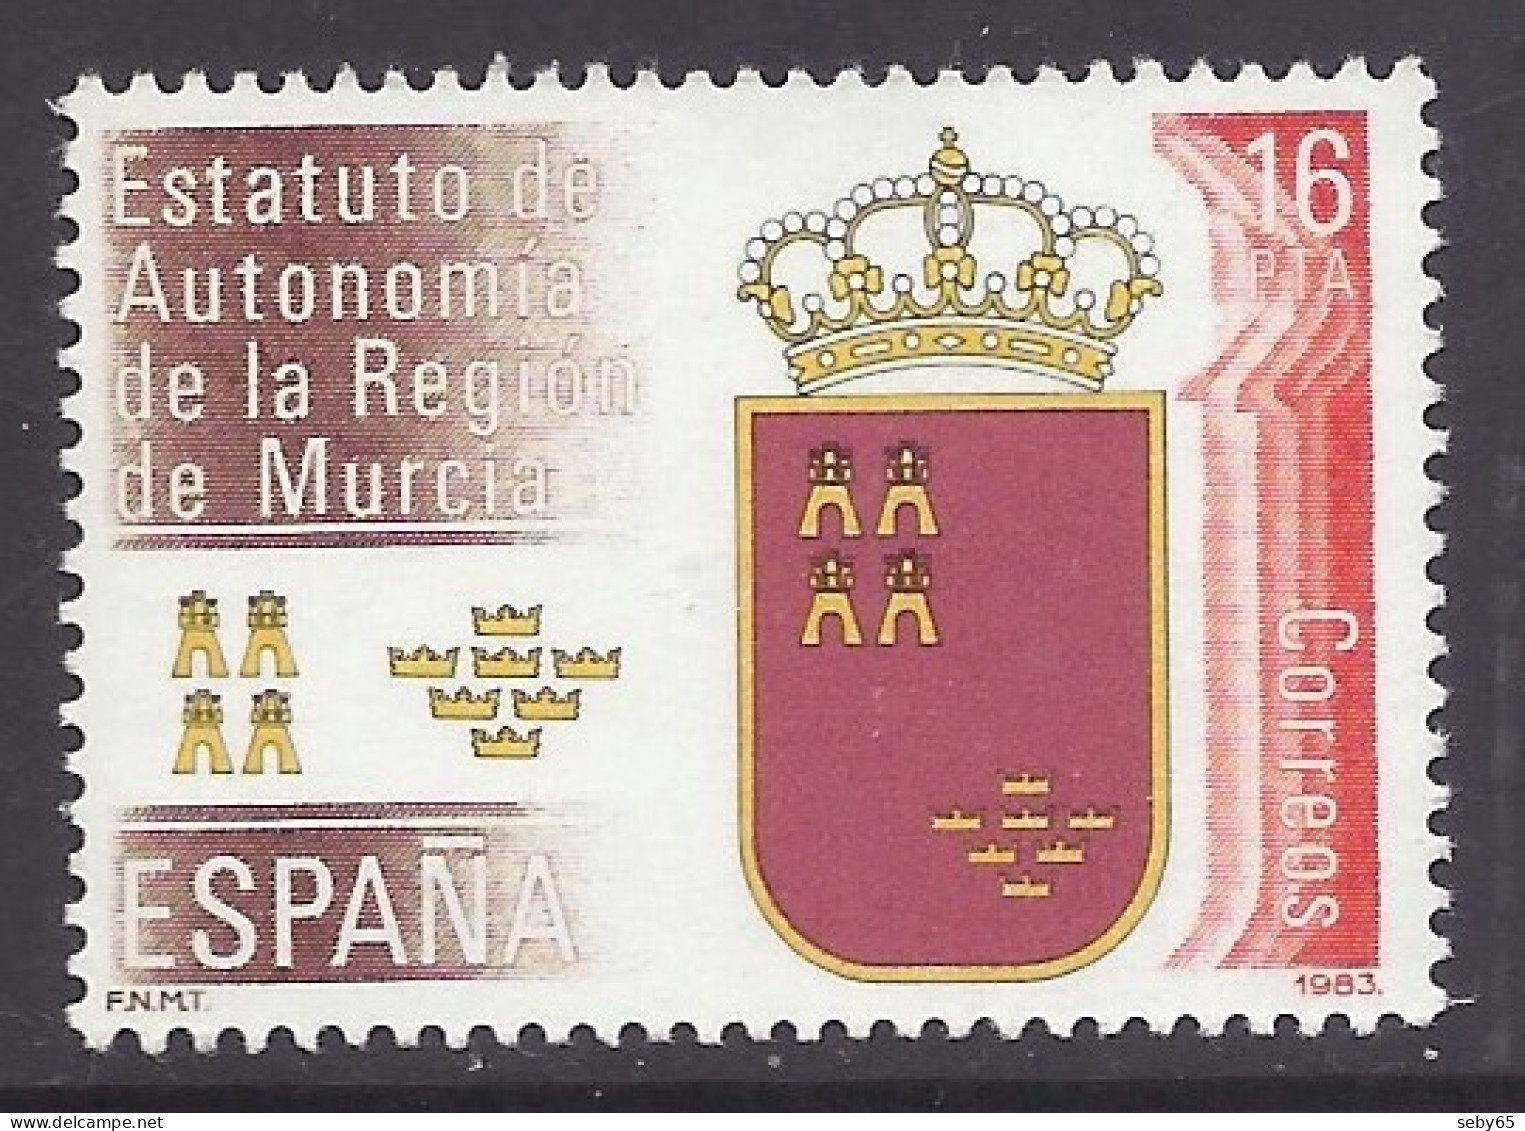 Spain 1983 - Estatutos De Autonomías, Region De Murcia, Coat Of Arms, Crown, Emblem - MNH - Unused Stamps